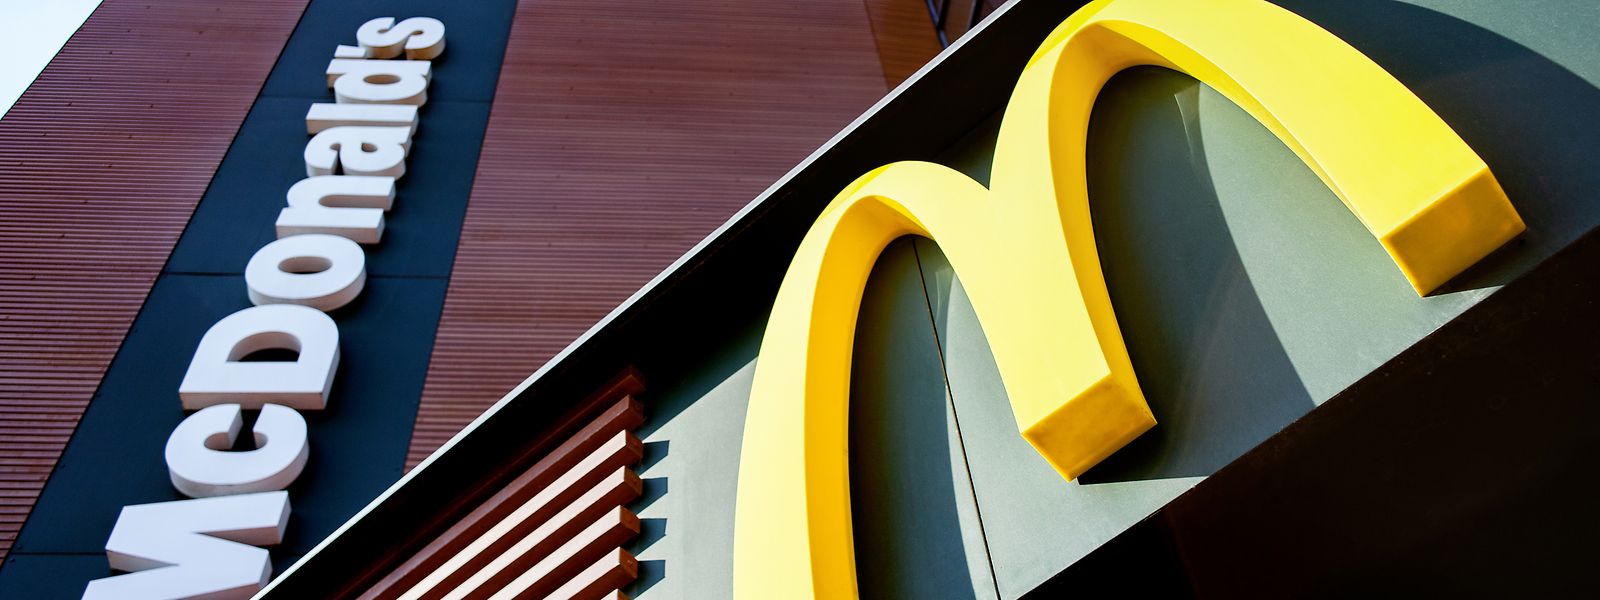 McDonald's a salué jeudi la «fin» d'un litige «sans reconnaissance de faute» et assuré «tout mettre en œuvre pour se conformer aux lois».